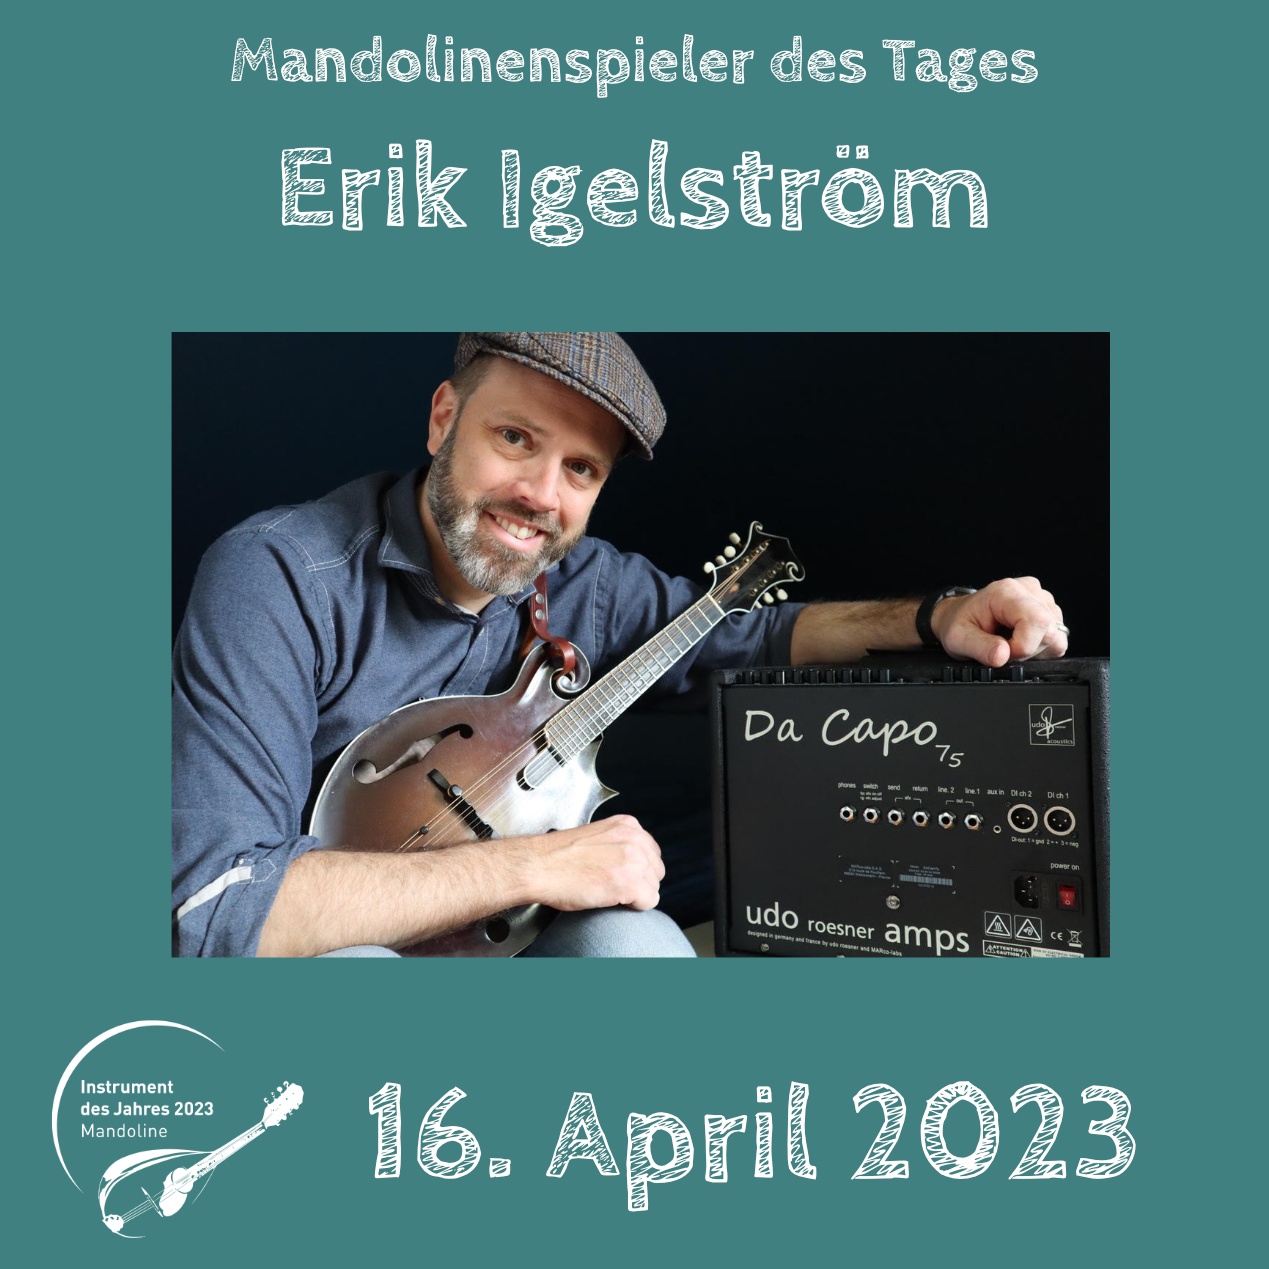 Erik Igelström Instrument des Jahres 2023 Mandolinenspieler Mandolinenspielerin des Tages